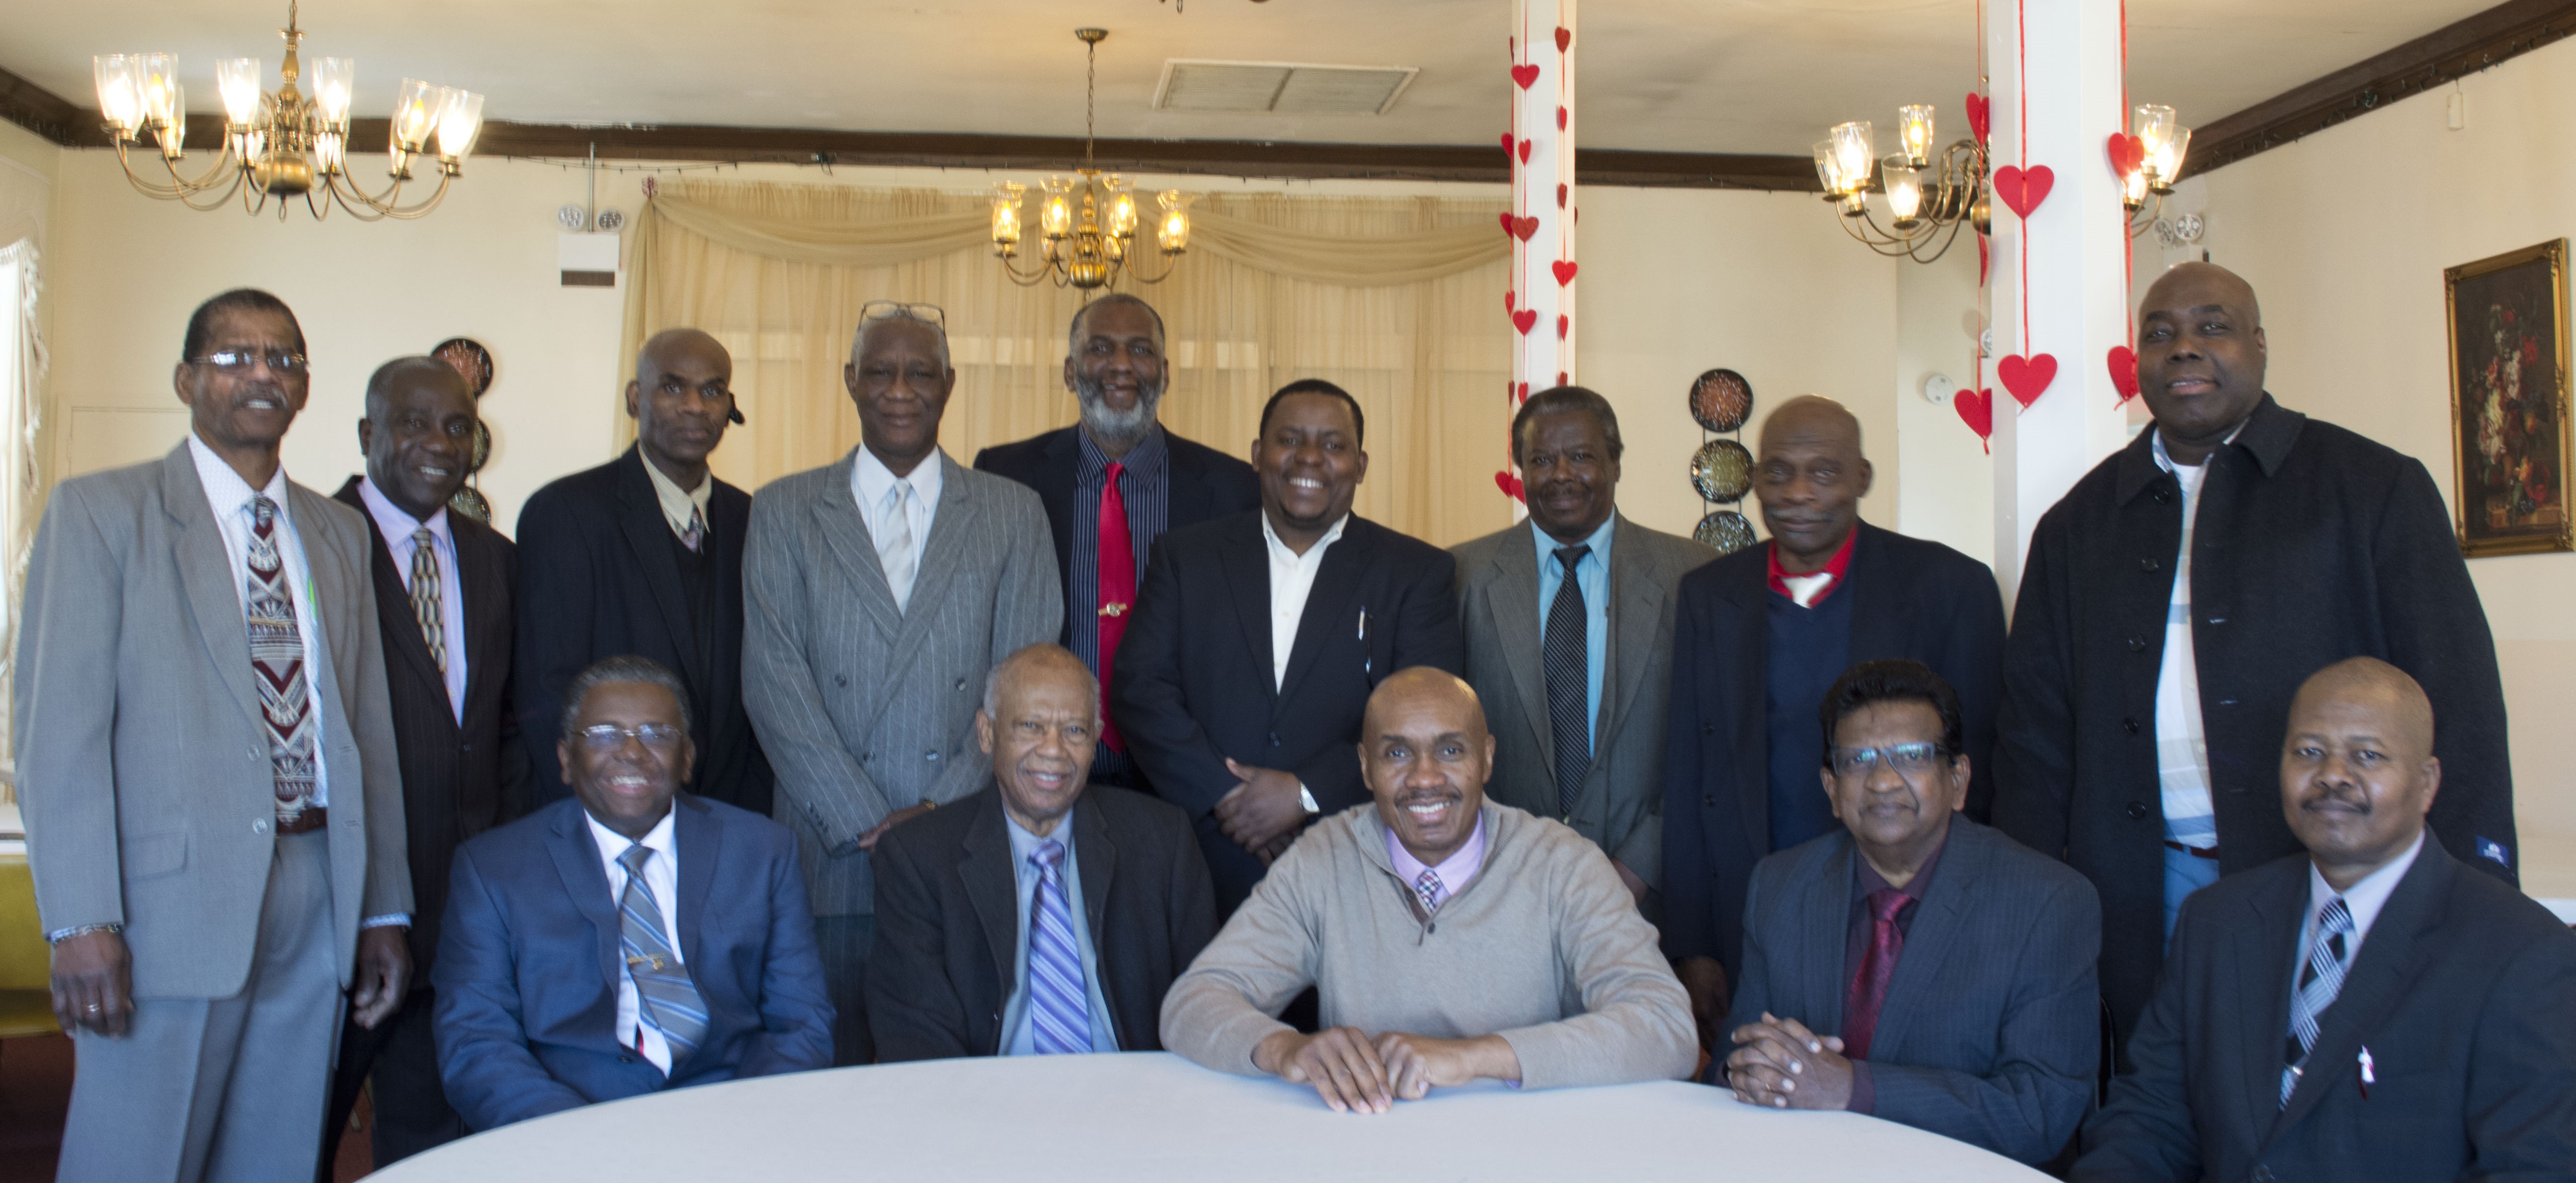 Wesleyan Men JAMAICAQUEENS WESLEYAN CHURCH